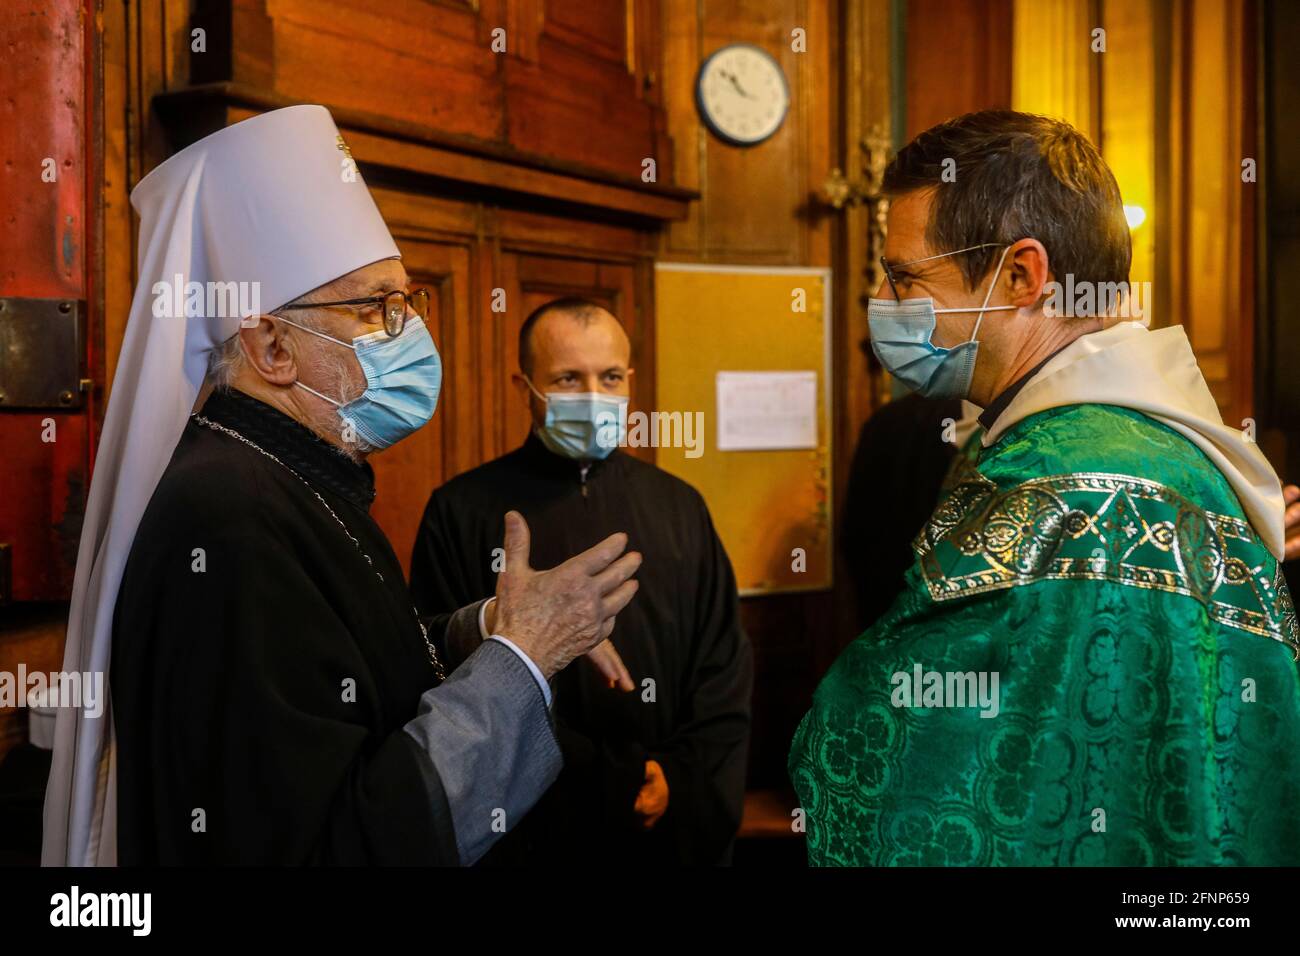 Sacerdoti ortodossi e cattolici e vescovo nella sagrestia della chiesa cattolica di Saint-Philippe-du-Roule, parigi, Francia Foto Stock